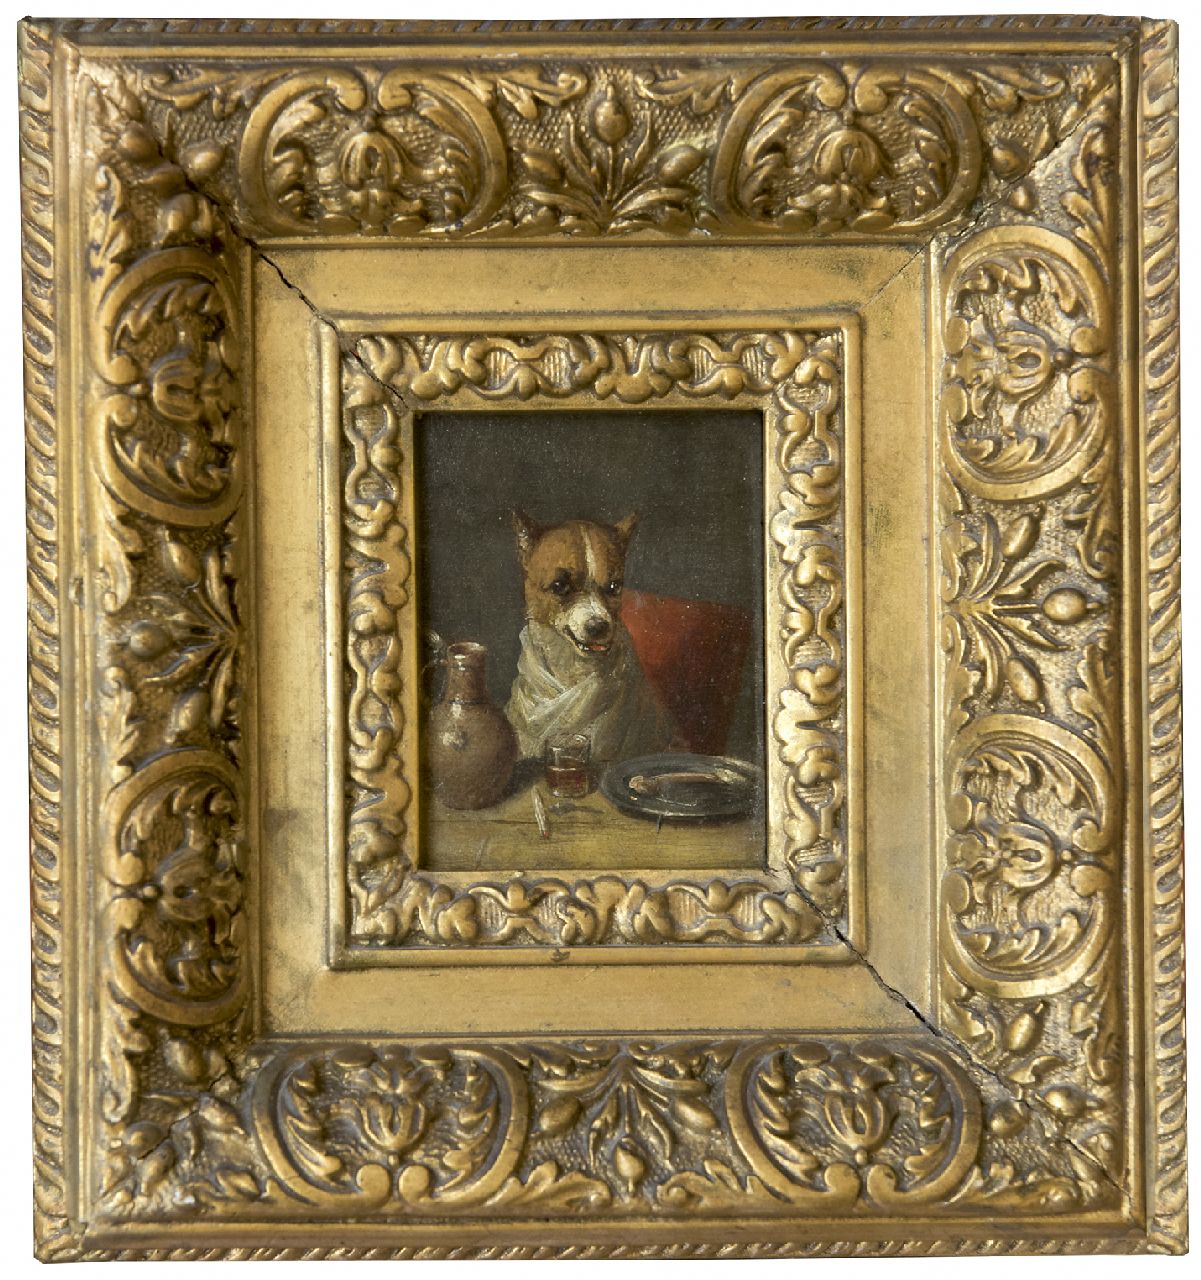 Eycken Ch. van den | Charles van den Eycken, De fijnproever: een hond aan tafel, olieverf op paneel 7,5 x 5,6 cm, gesigneerd linksboven met monogram en gedateerd '77